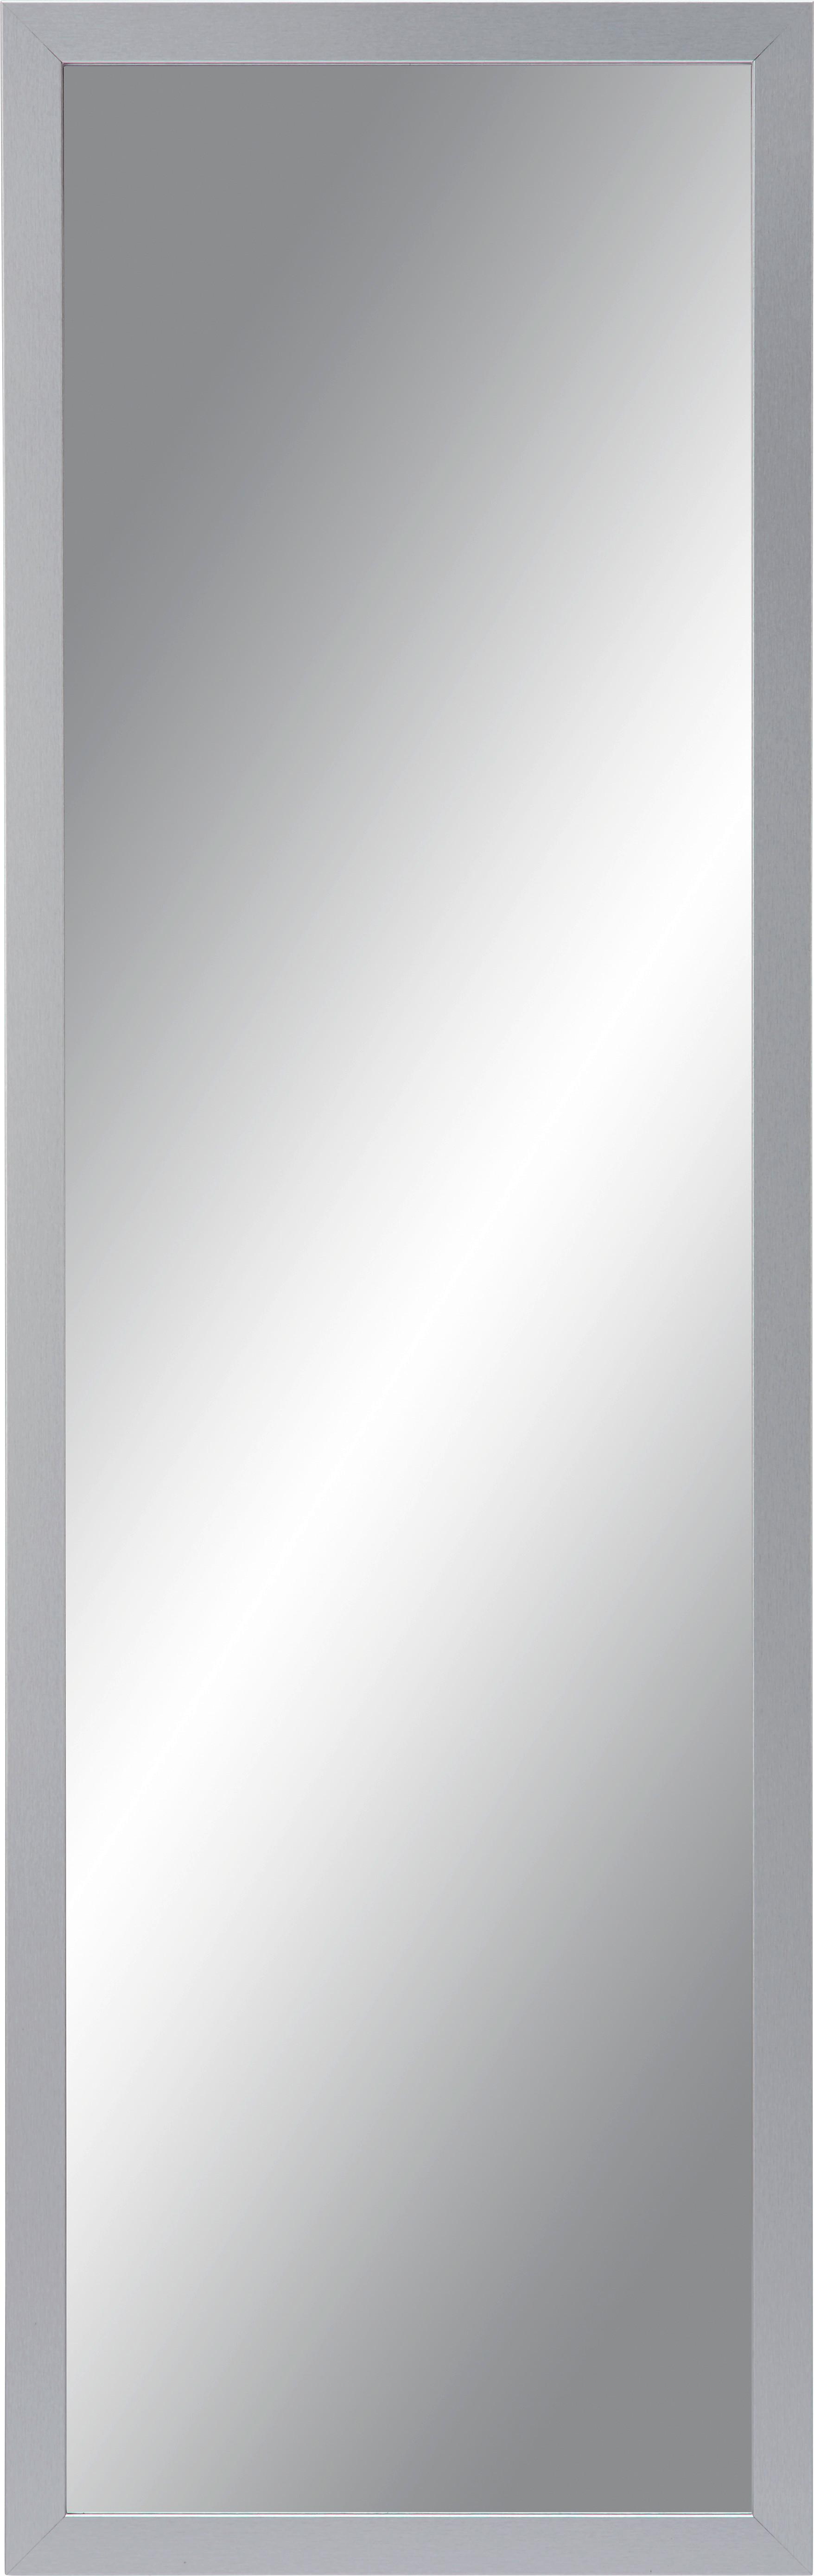 Stensko Ogledalo Silver - srebrna, steklo/leseni material (50/150/2cm) - Modern Living